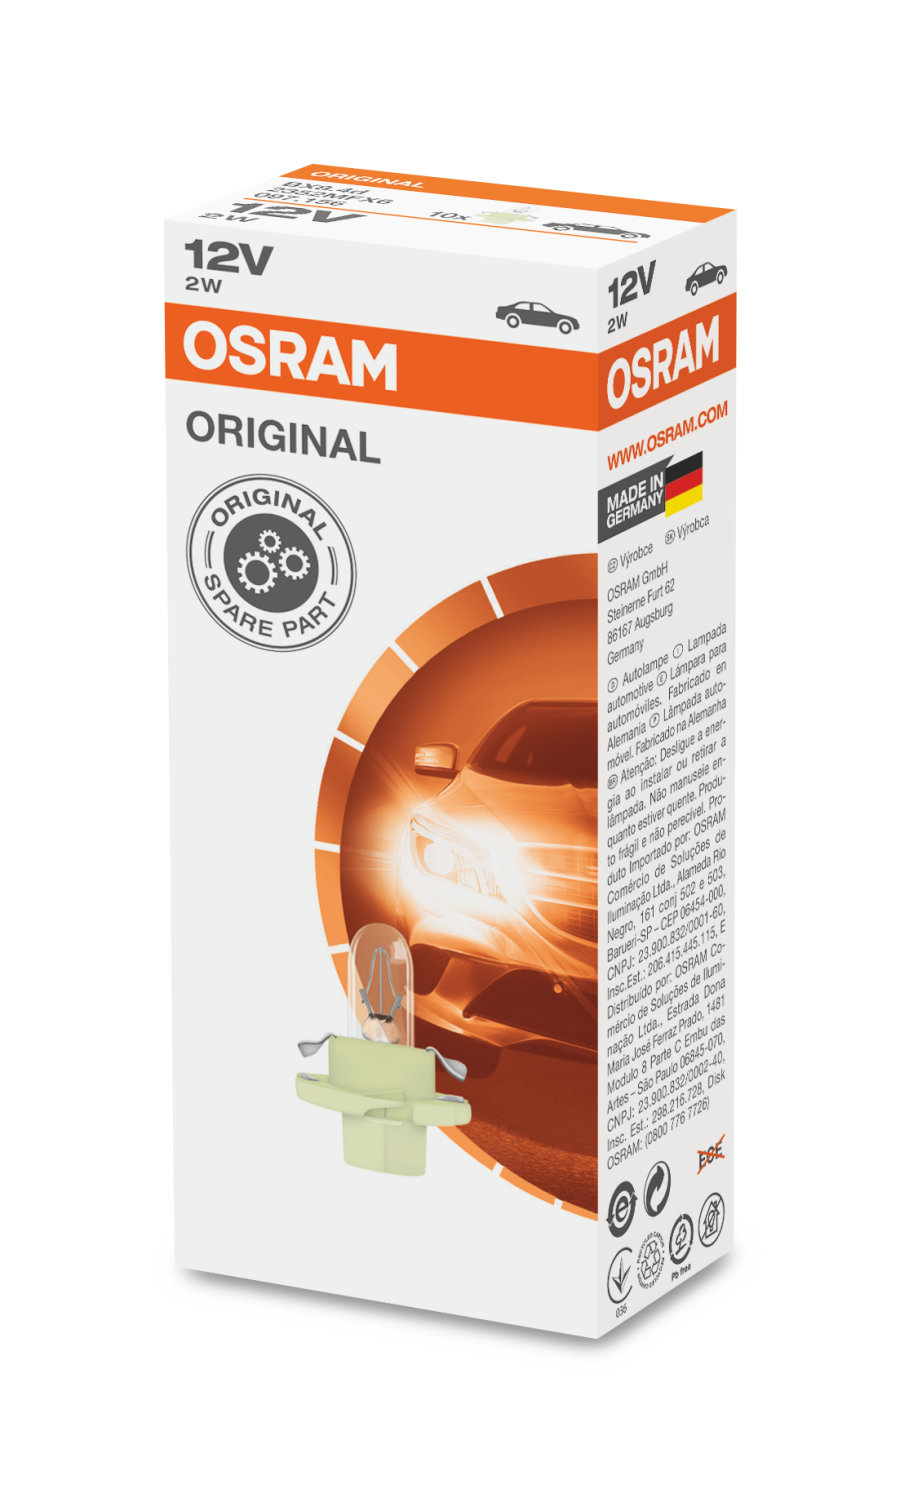 Автолампа в панель BX8.4d "Osram", Original, 12V, 2W